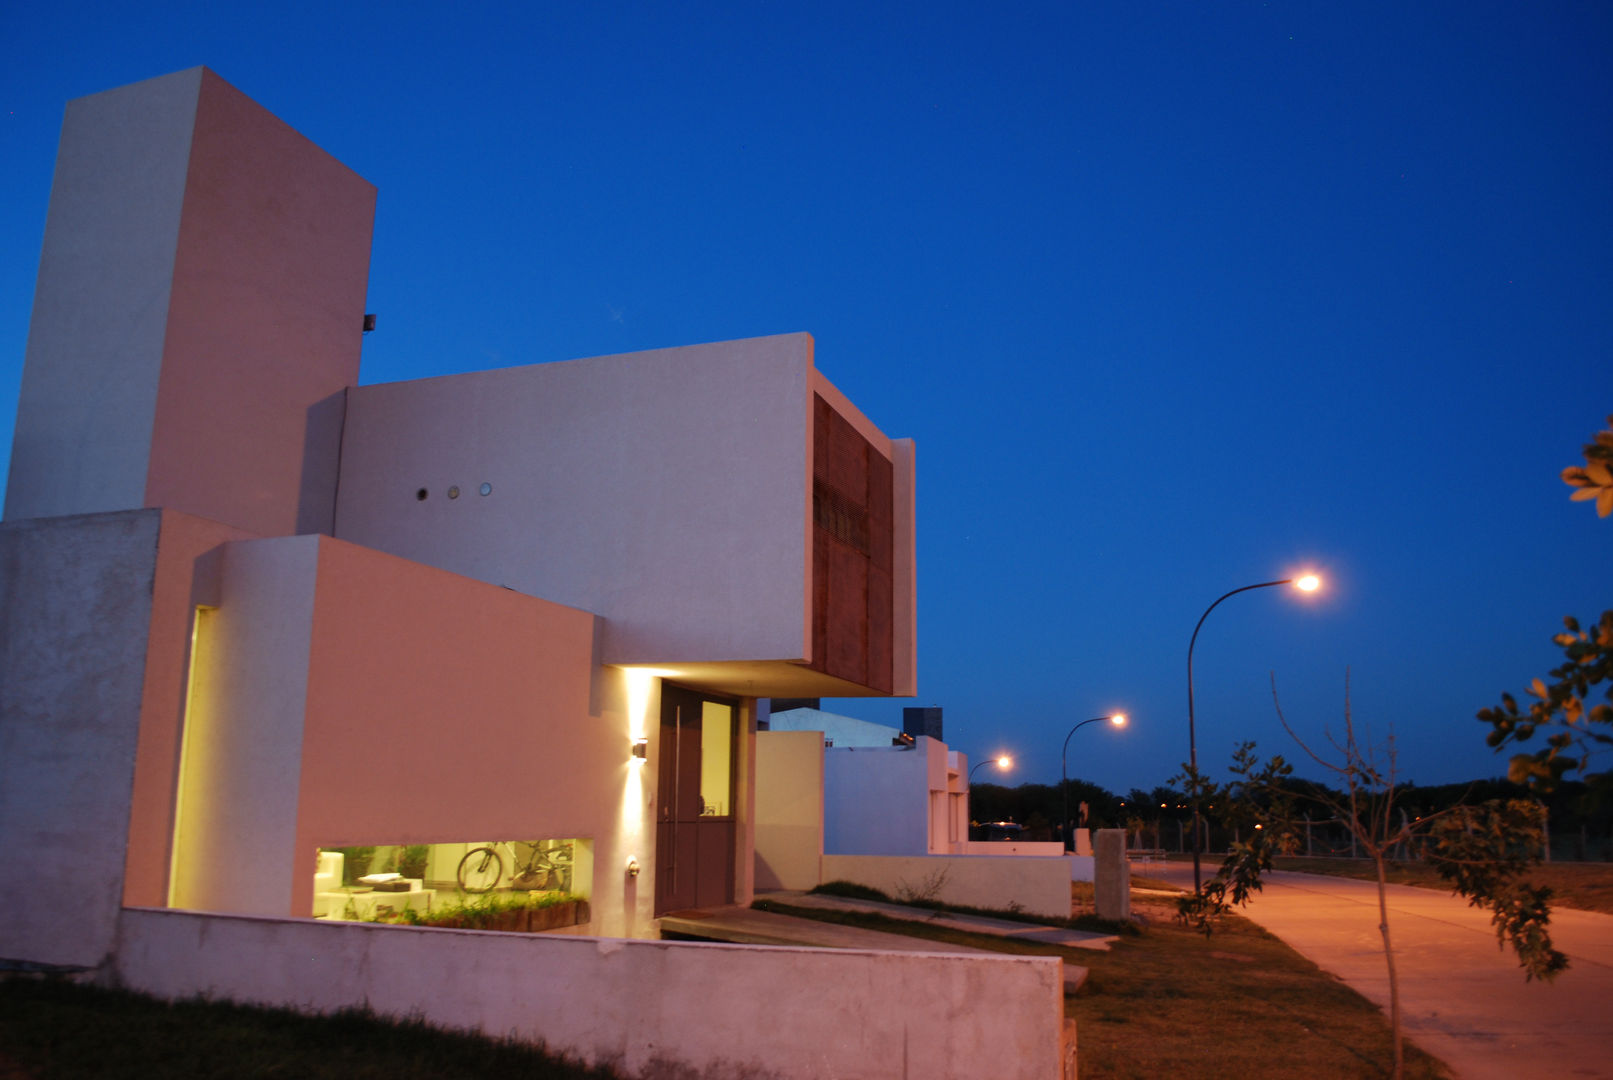 Casa en Manatiales - ​Casa del músico, barqs bisio arquitectos barqs bisio arquitectos 現代房屋設計點子、靈感 & 圖片